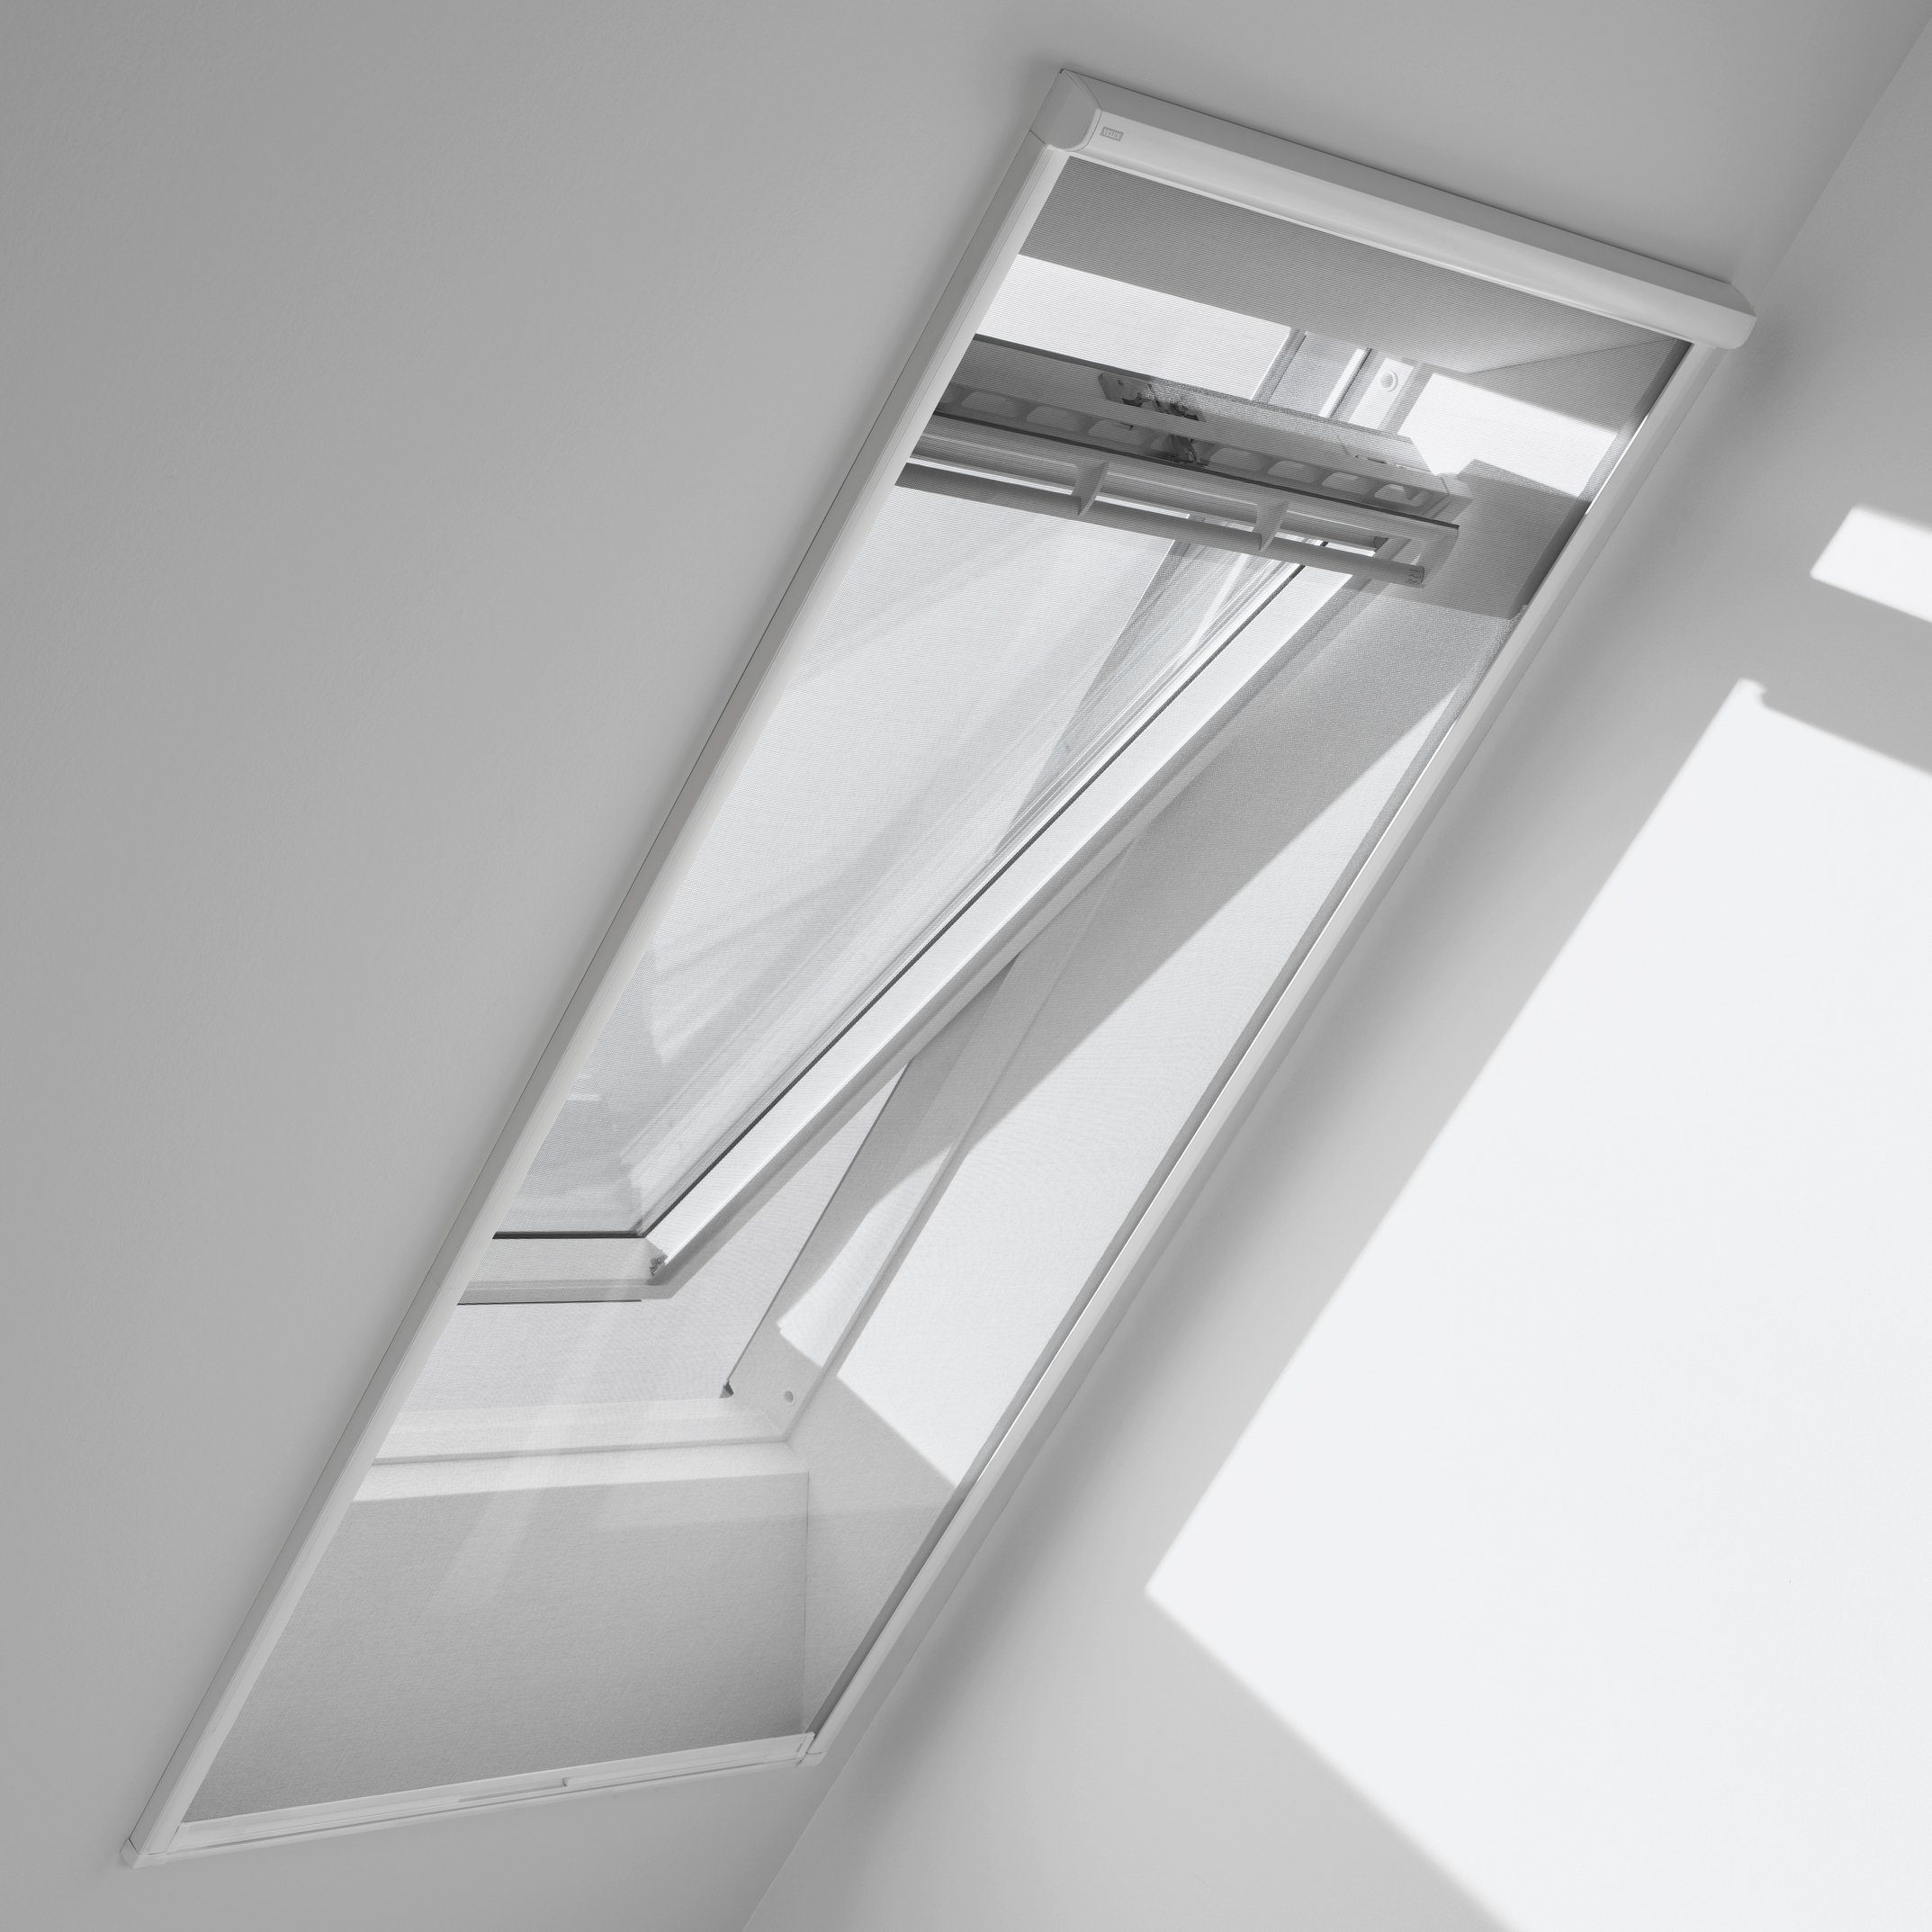 Insektenschutzrollo für Dachfenster, ZIL PK10 0000SWL, VELUX, transparent, verschraubt, für max. Dachausschnitt: 922 x 2400 mm | Insektenschutzrollos